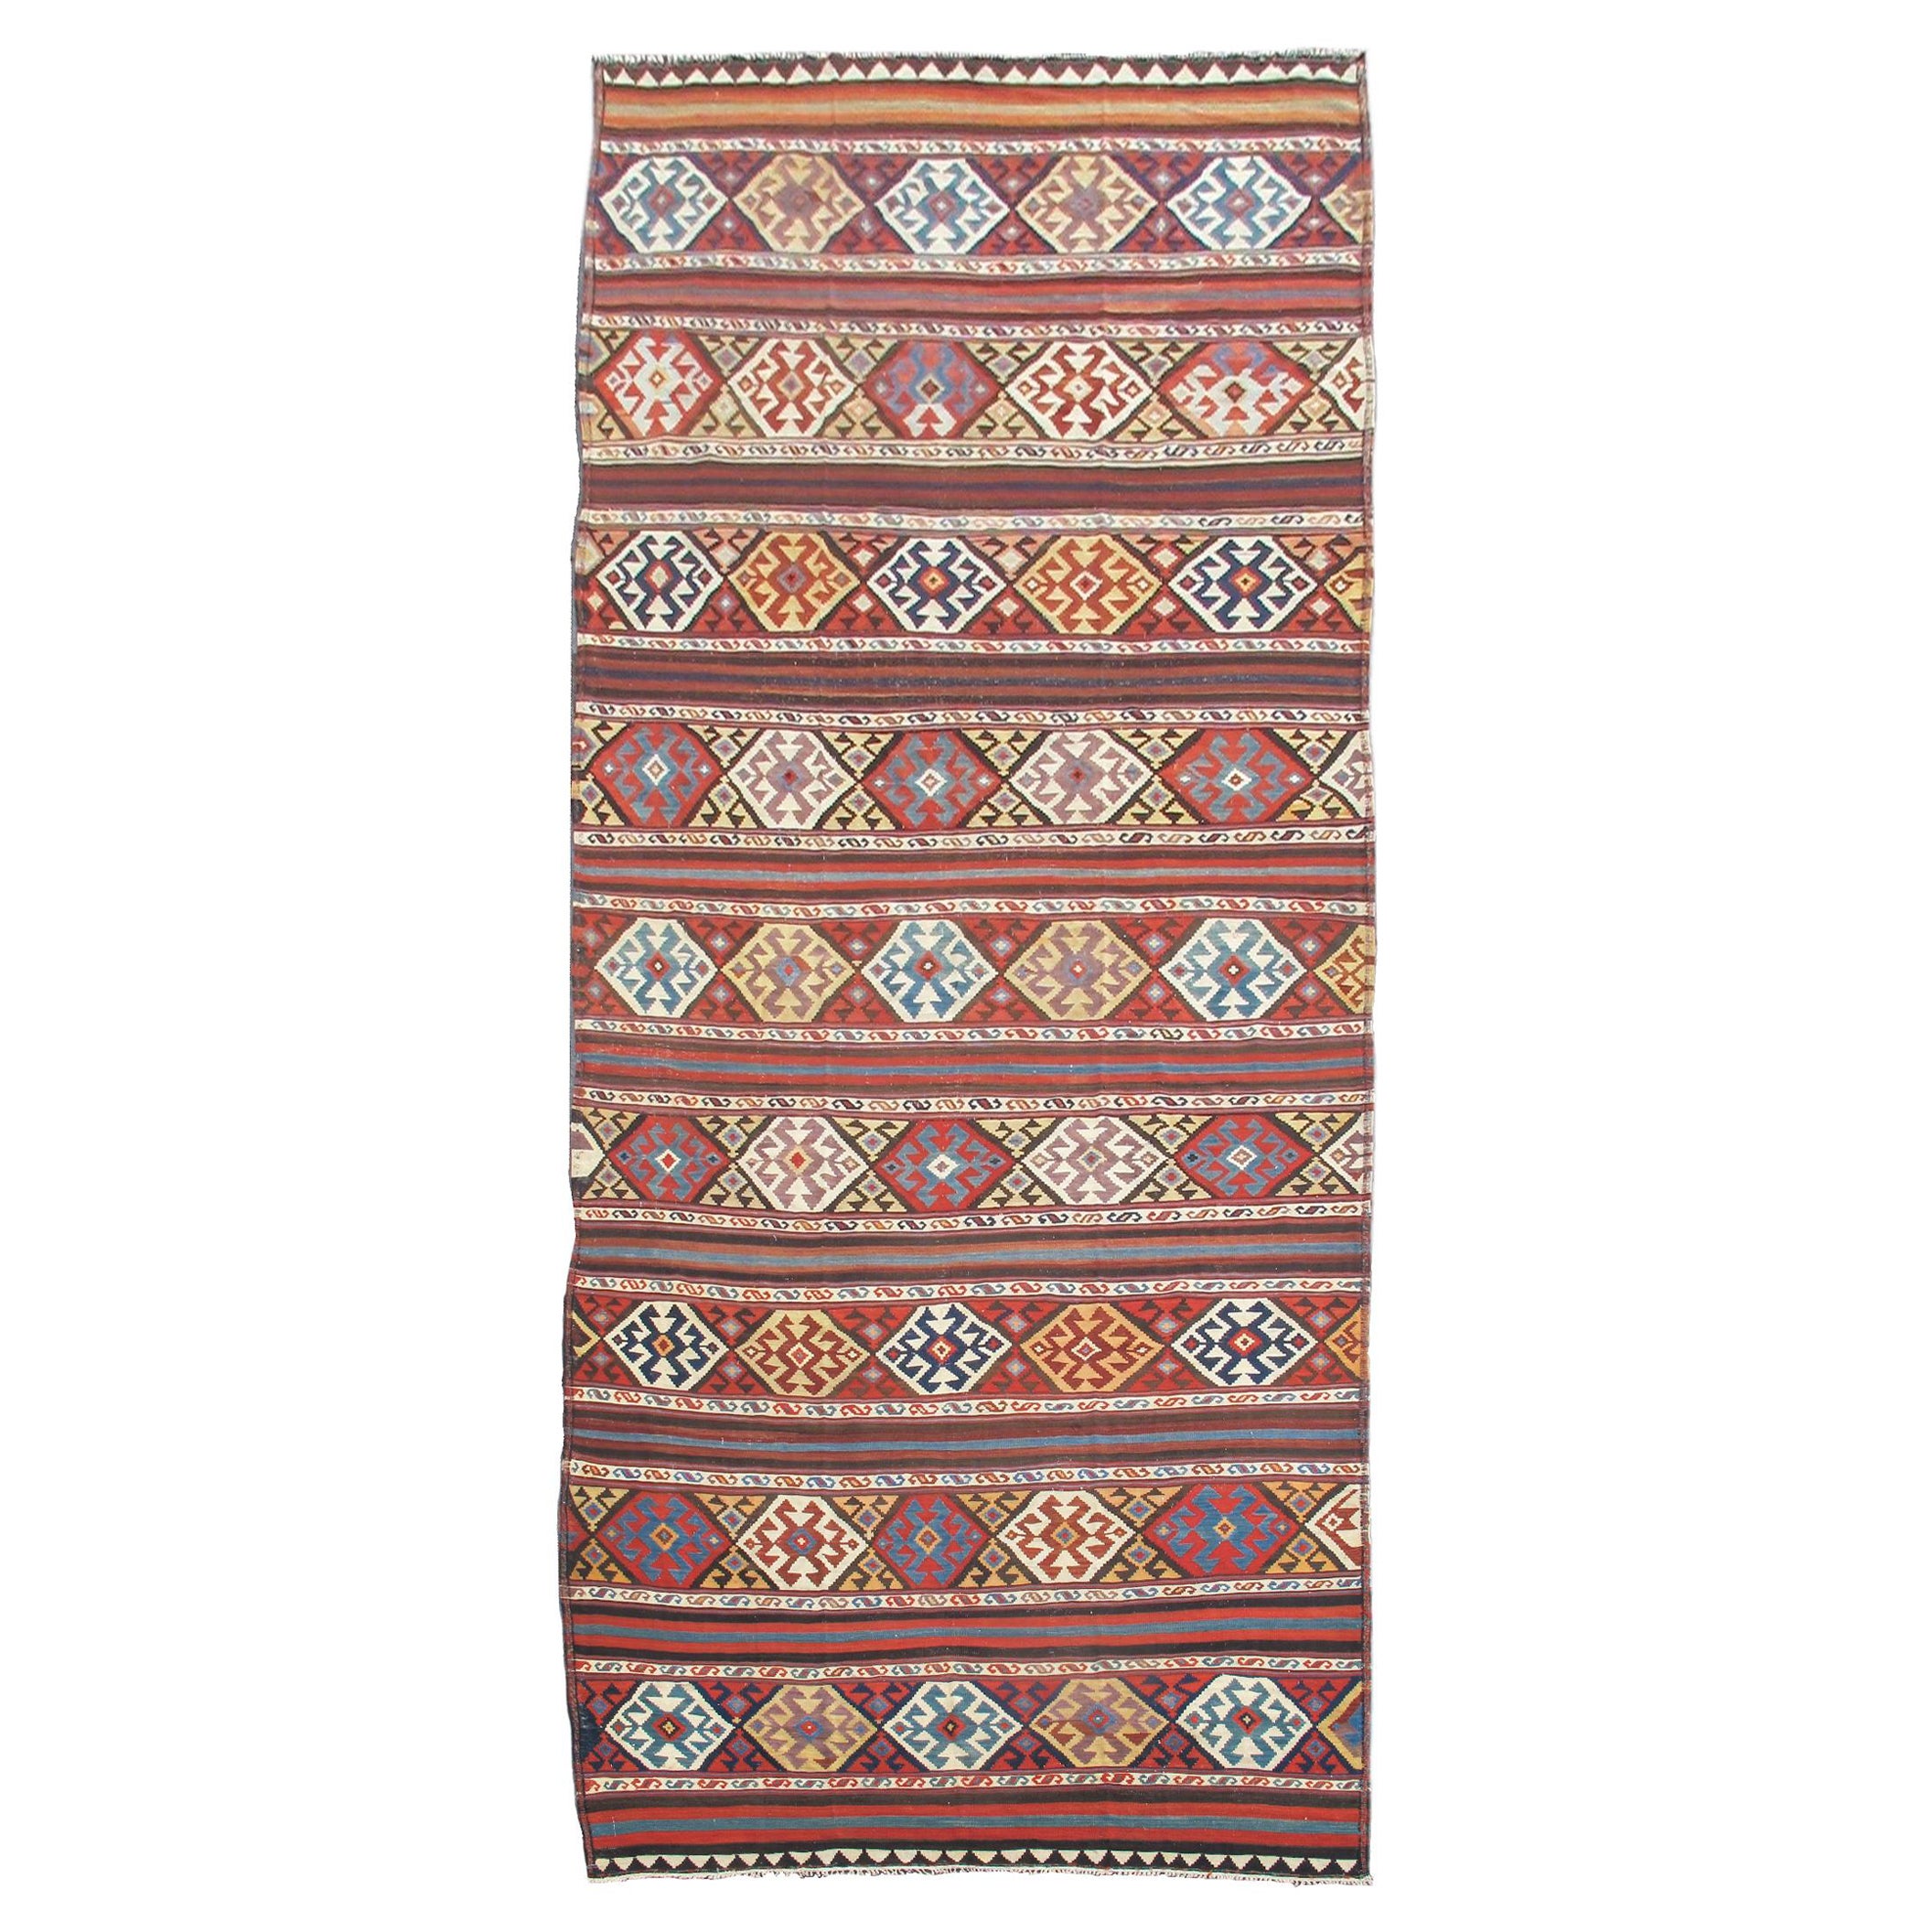 Antique Caucasian Shahsevan Kilim Rug, c. 1900